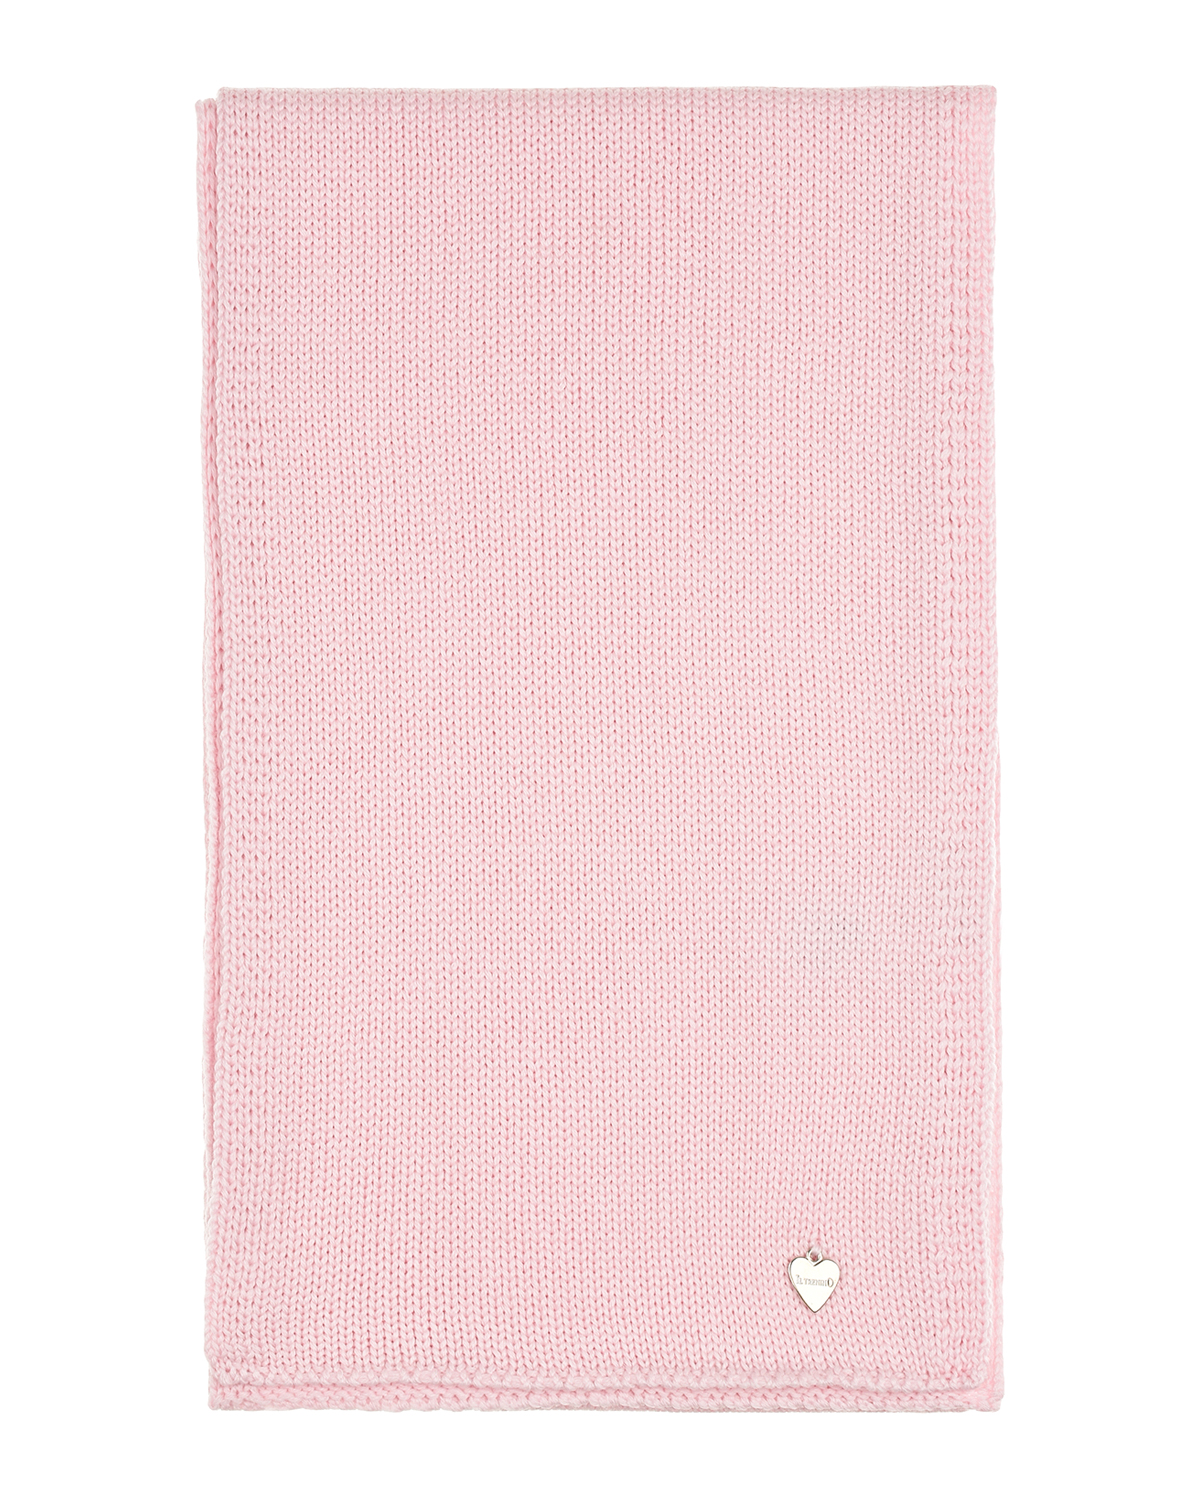 Светло-розовый шарф 142х21 см. Il Trenino детское, размер unica - фото 2